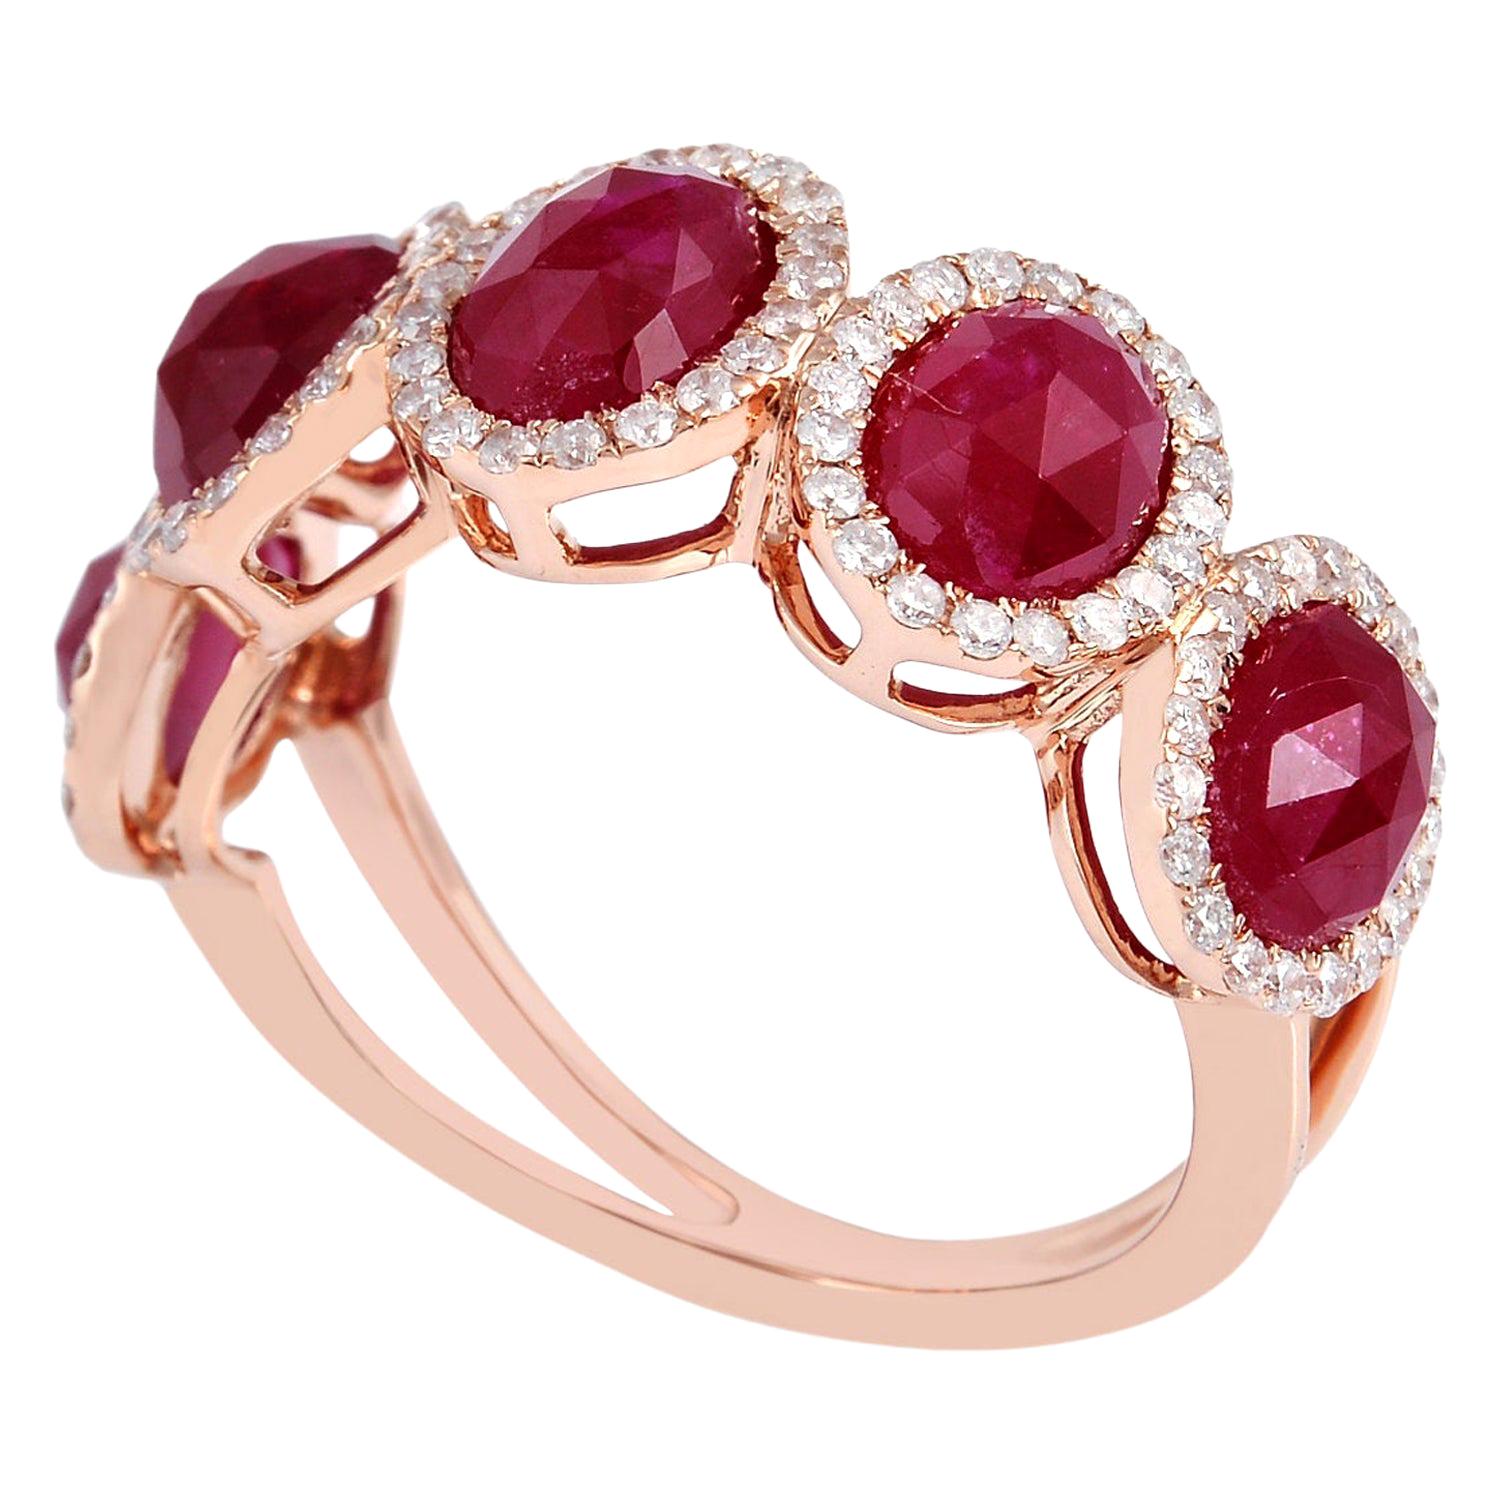 For Sale:  5.85 Carat Ruby Diamond 18 Karat Gold Ring